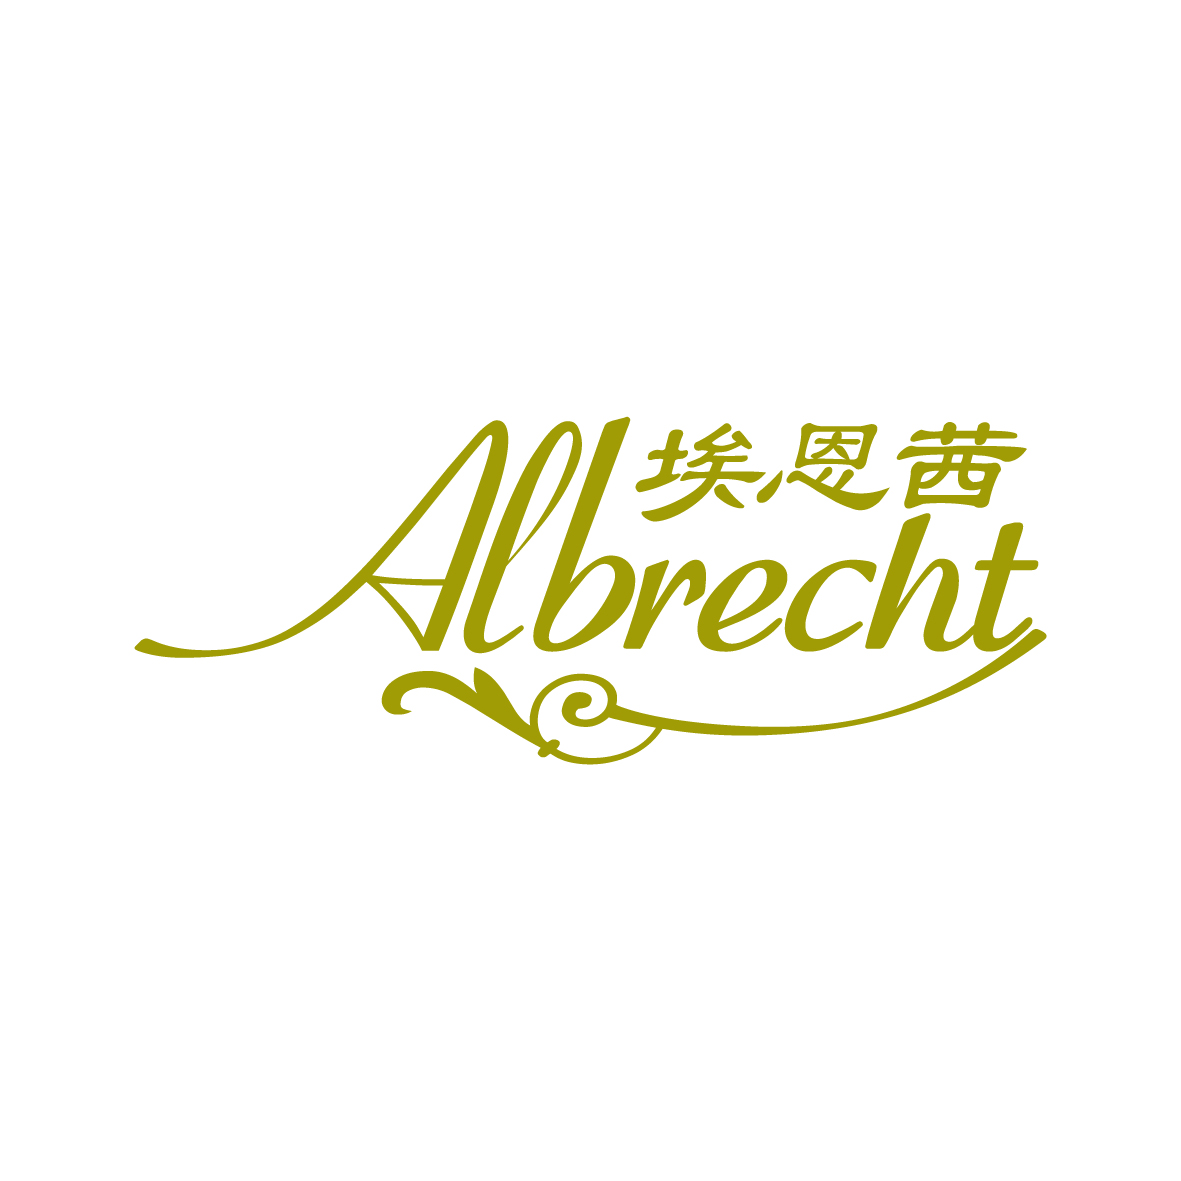 广州品翰文化发展有限公司商标埃恩茜 AIBRECHT（03类）商标转让费用及联系方式